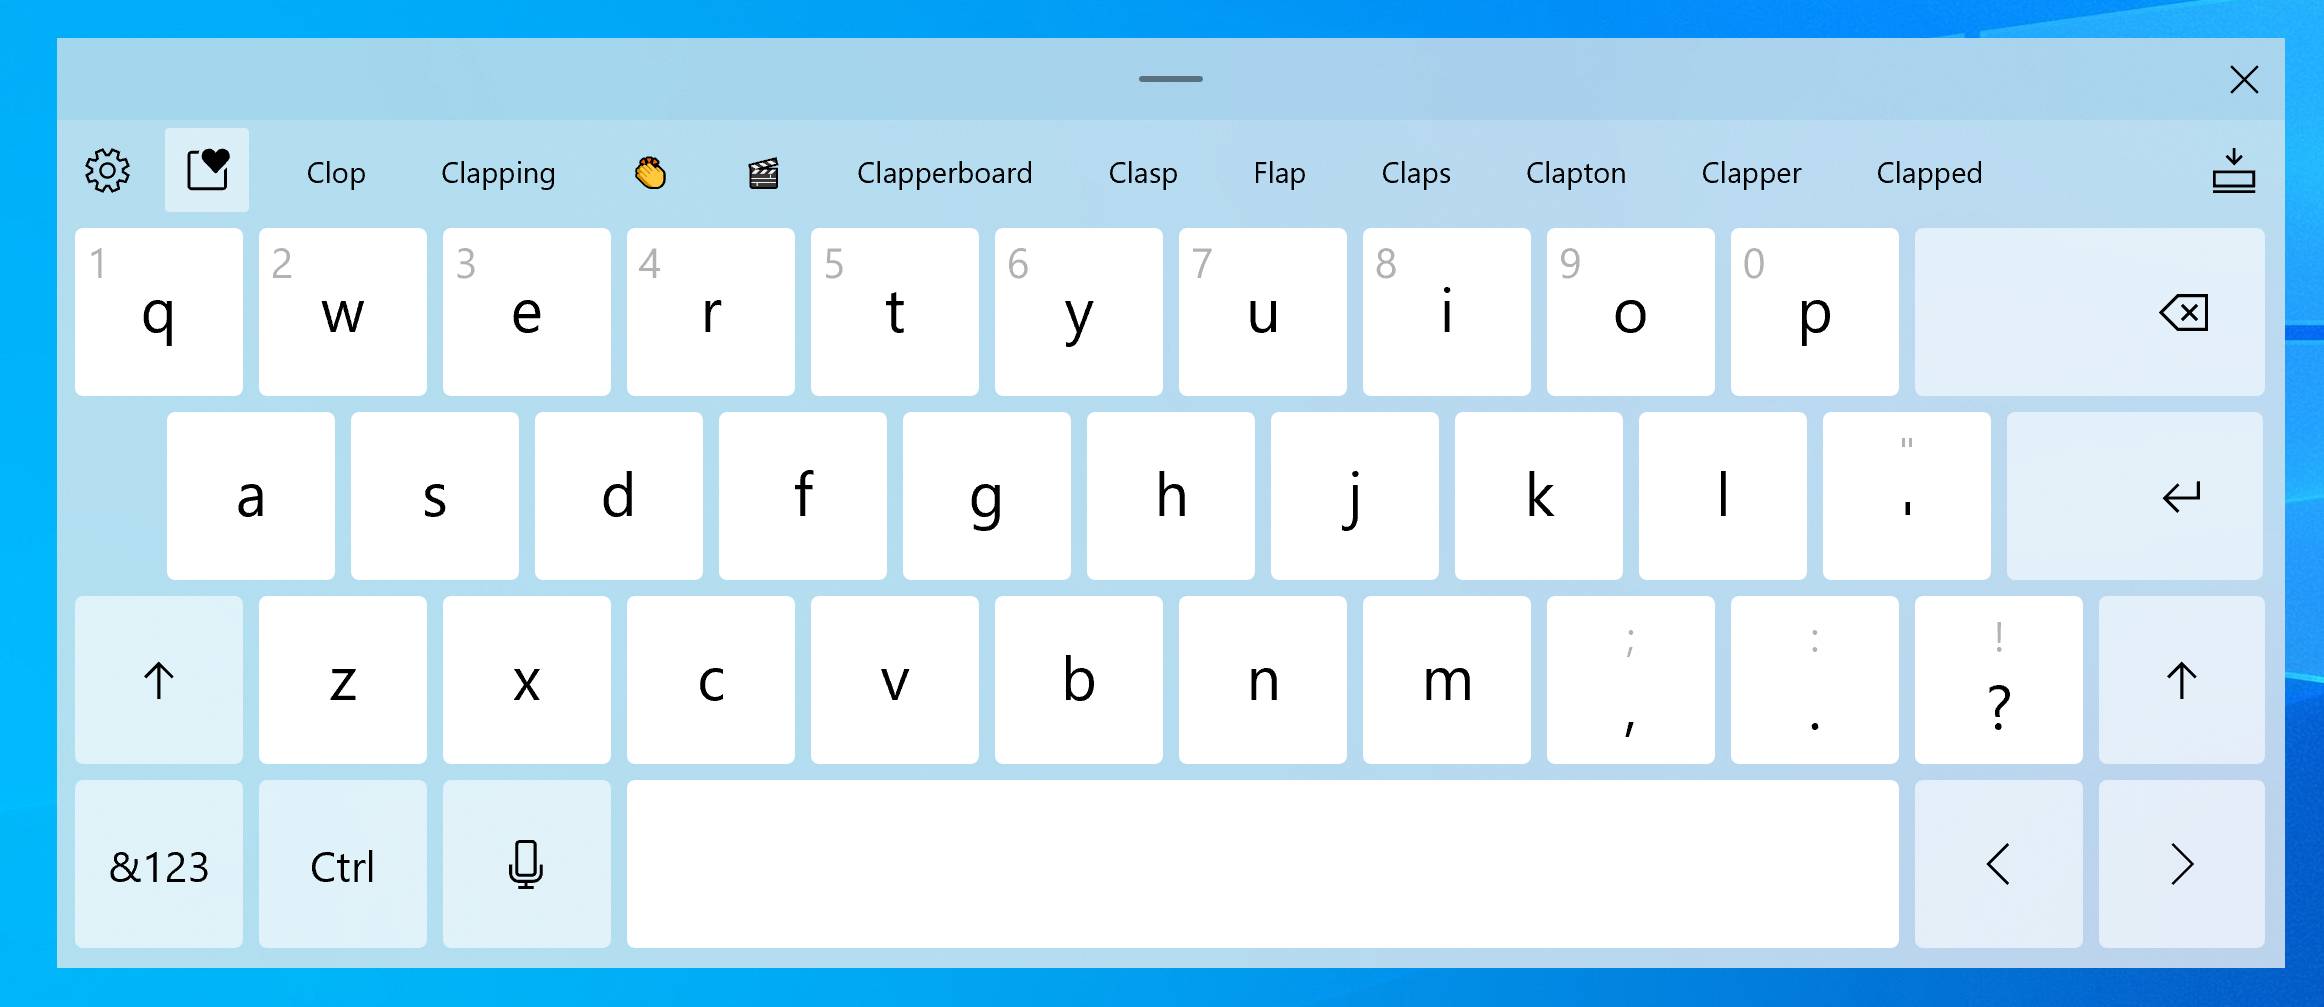 Nuevo teclado táctil de la Build 20206 de Windows 10 Insider en el canal Dev